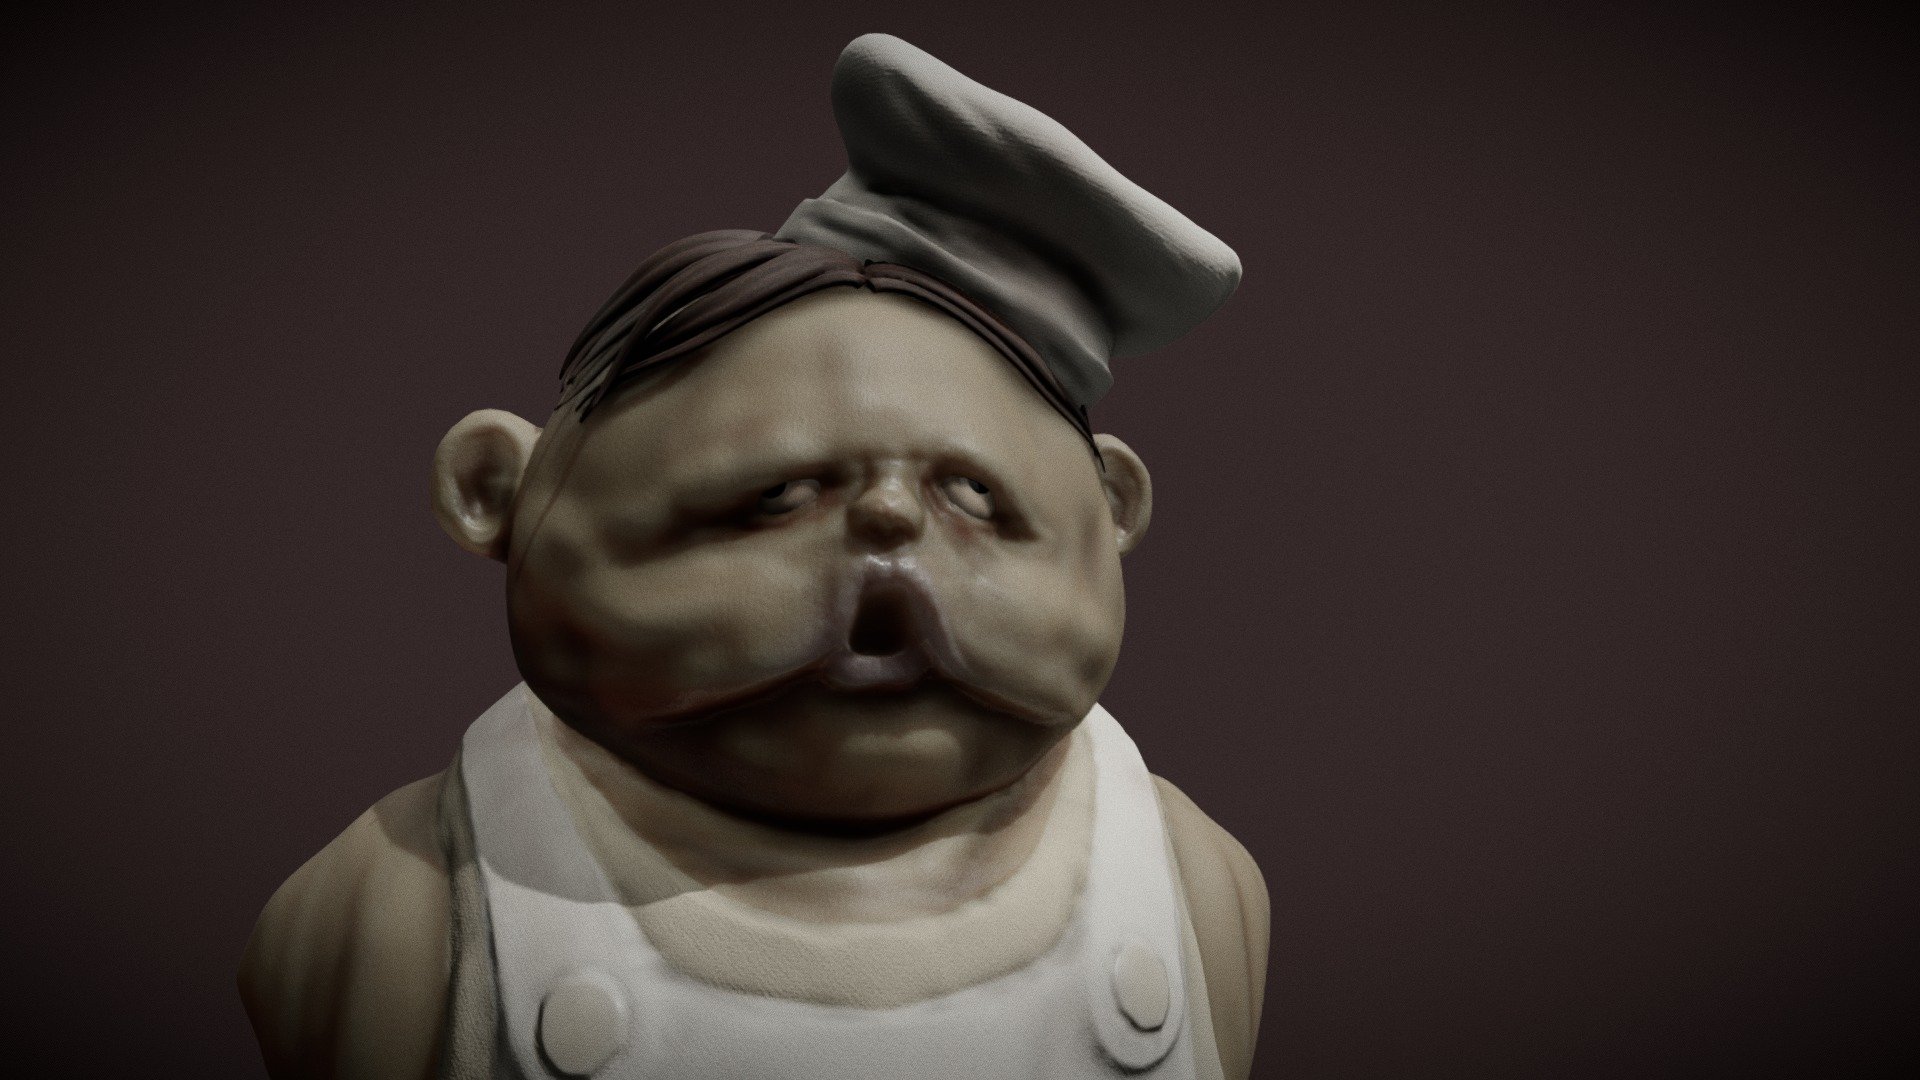 Chef (Little Nightmares) - Free 3D model by Raphael [da1f9fb]